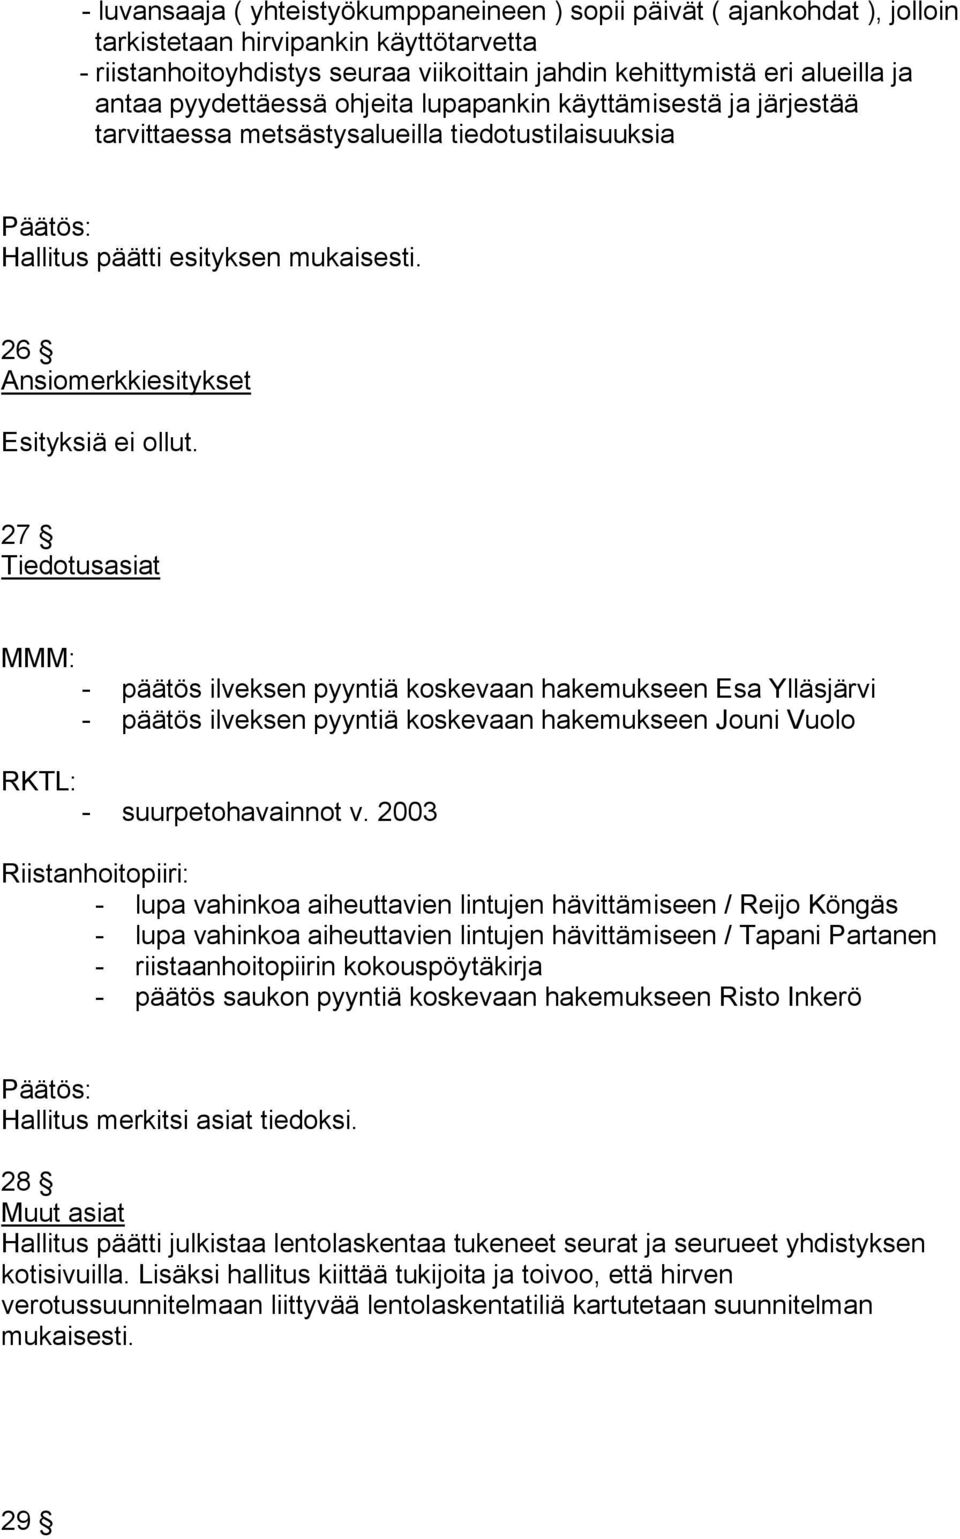 27 Tiedotusasiat MMM: - päätös ilveksen pyyntiä koskevaan hakemukseen Esa Ylläsjärvi - päätös ilveksen pyyntiä koskevaan hakemukseen Jouni Vuolo RKTL: - suurpetohavainnot v.